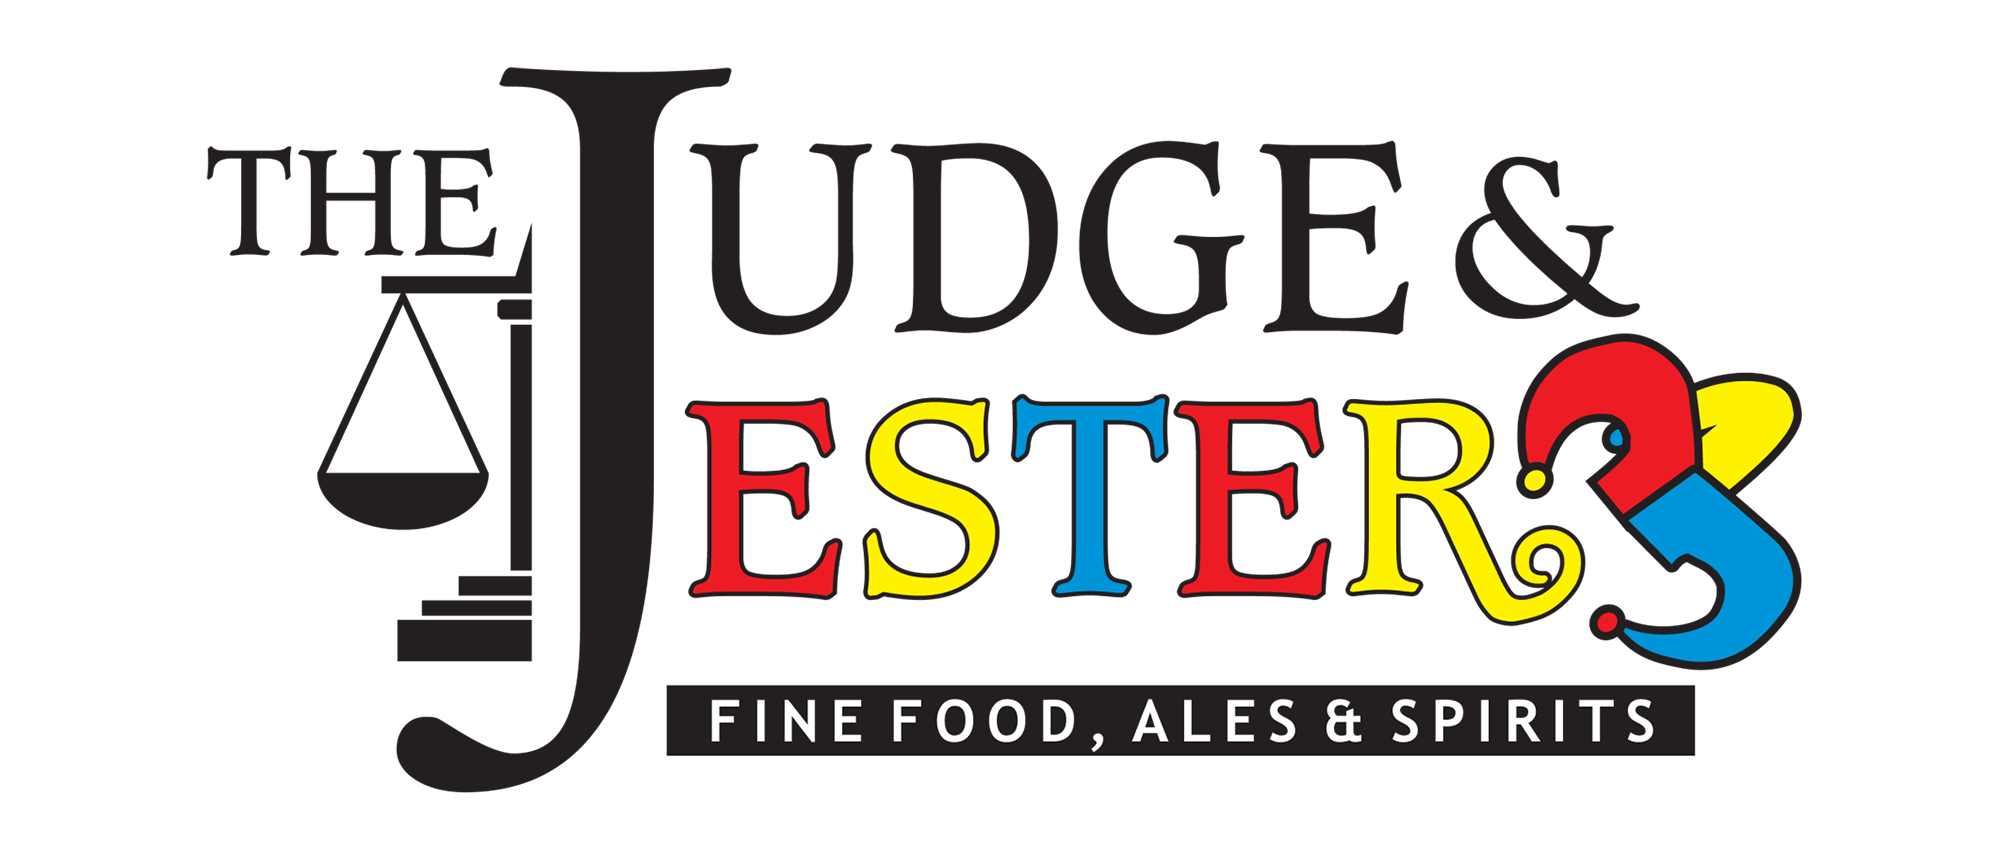 THE JUDGE & JESTER